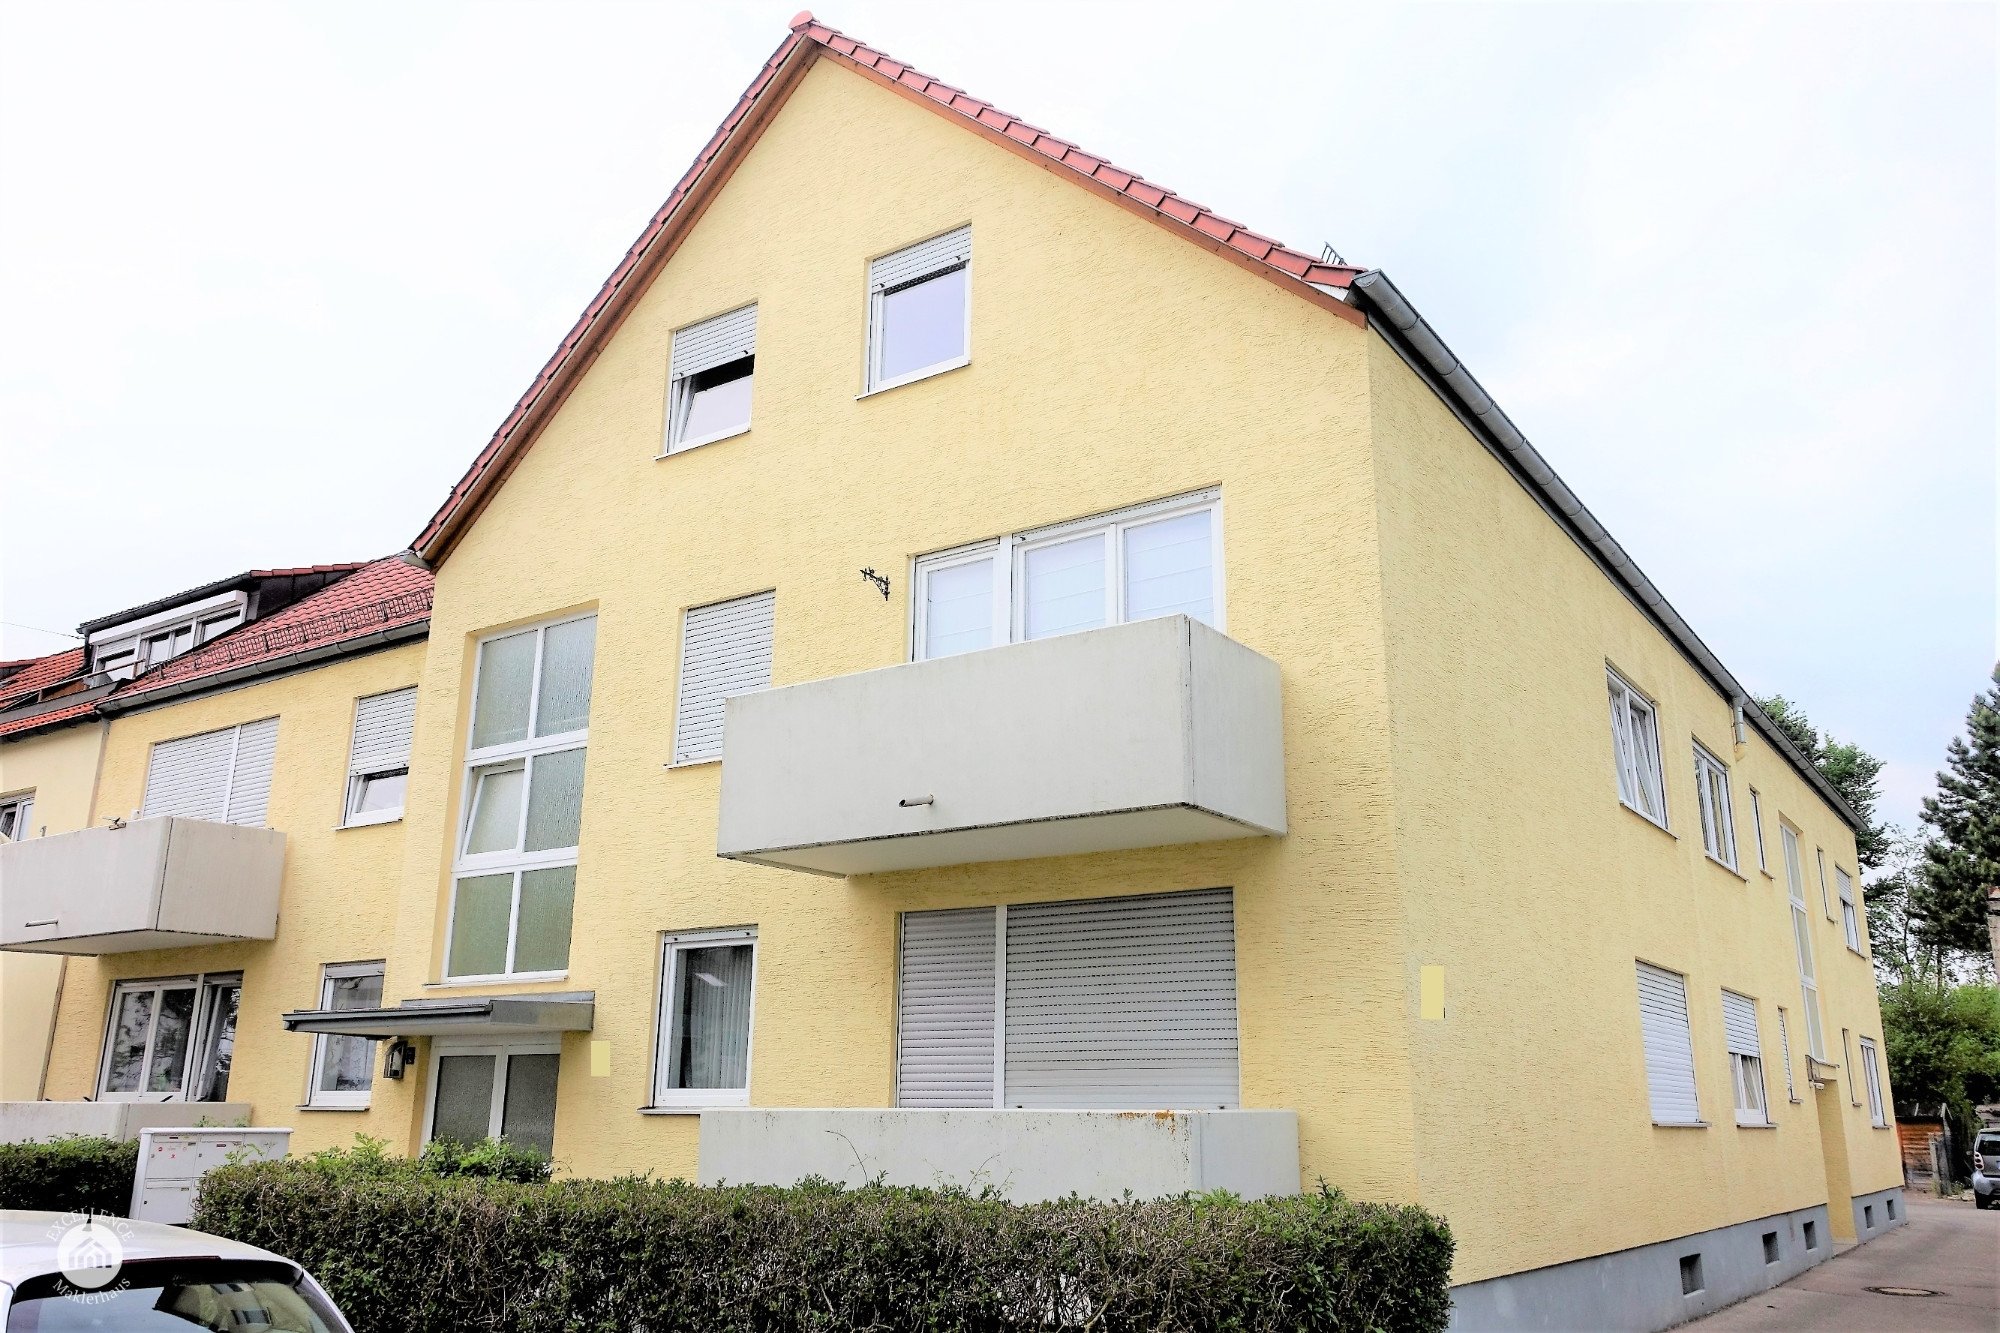 Immobilienangebot - Augsburg / Hochzoll-Süd - Alle - *Schöner Wohnen* 2 Zimmer Wohnung mit Balkon in Top Lage nahe Kuhsee und Autobahn A 8